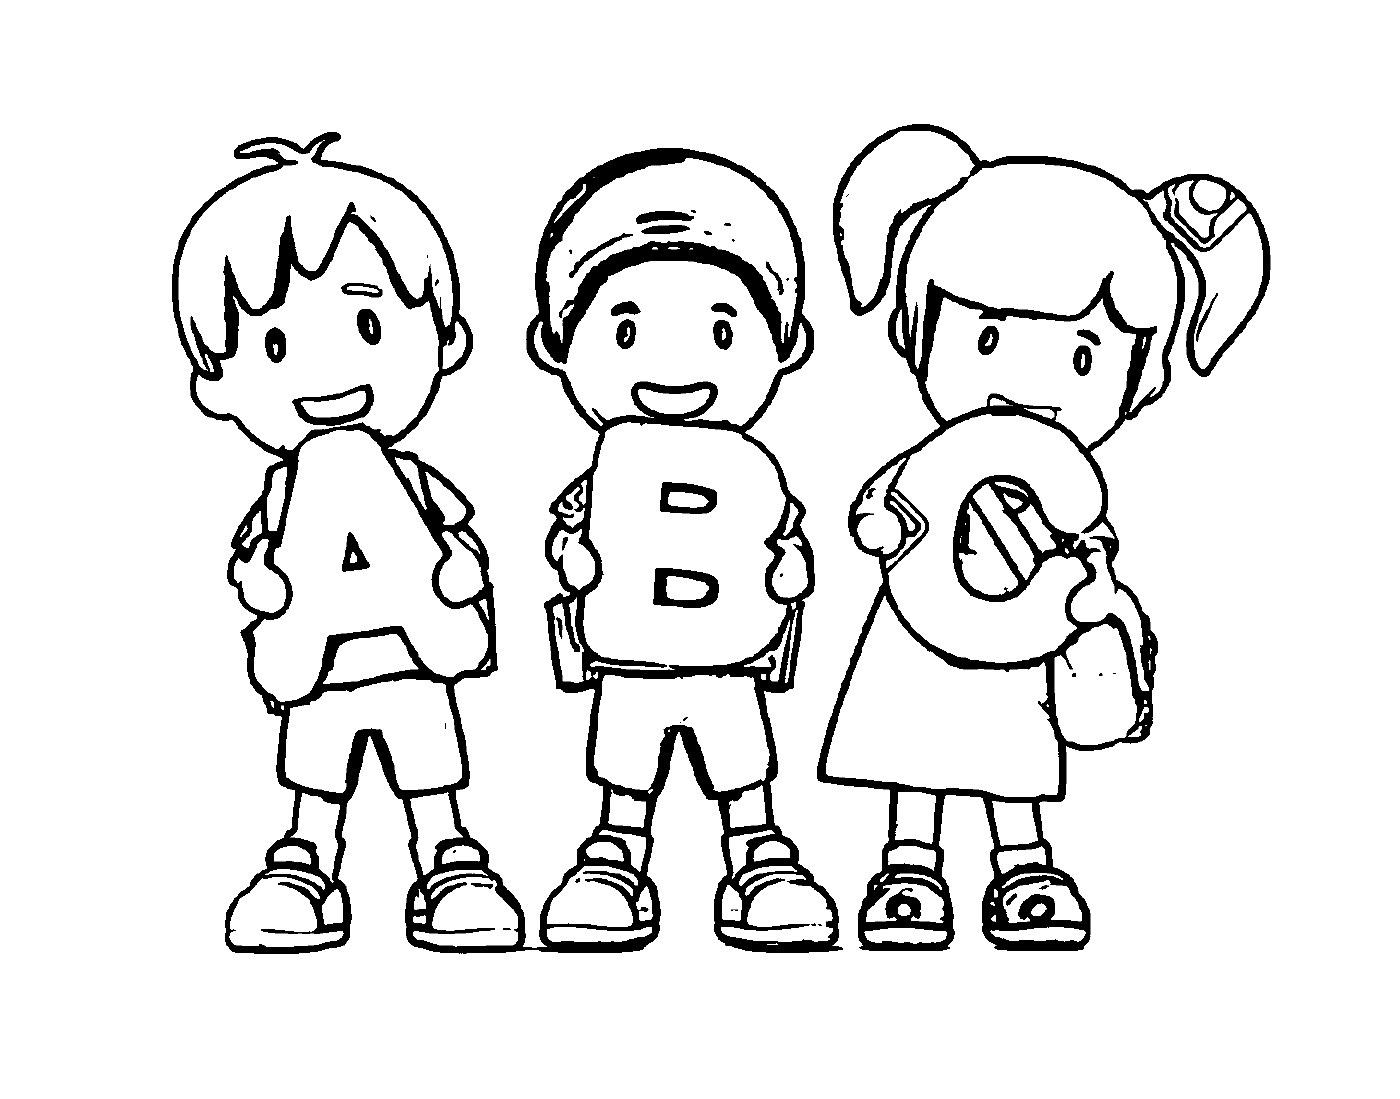   Enfants avec lettres ABC 